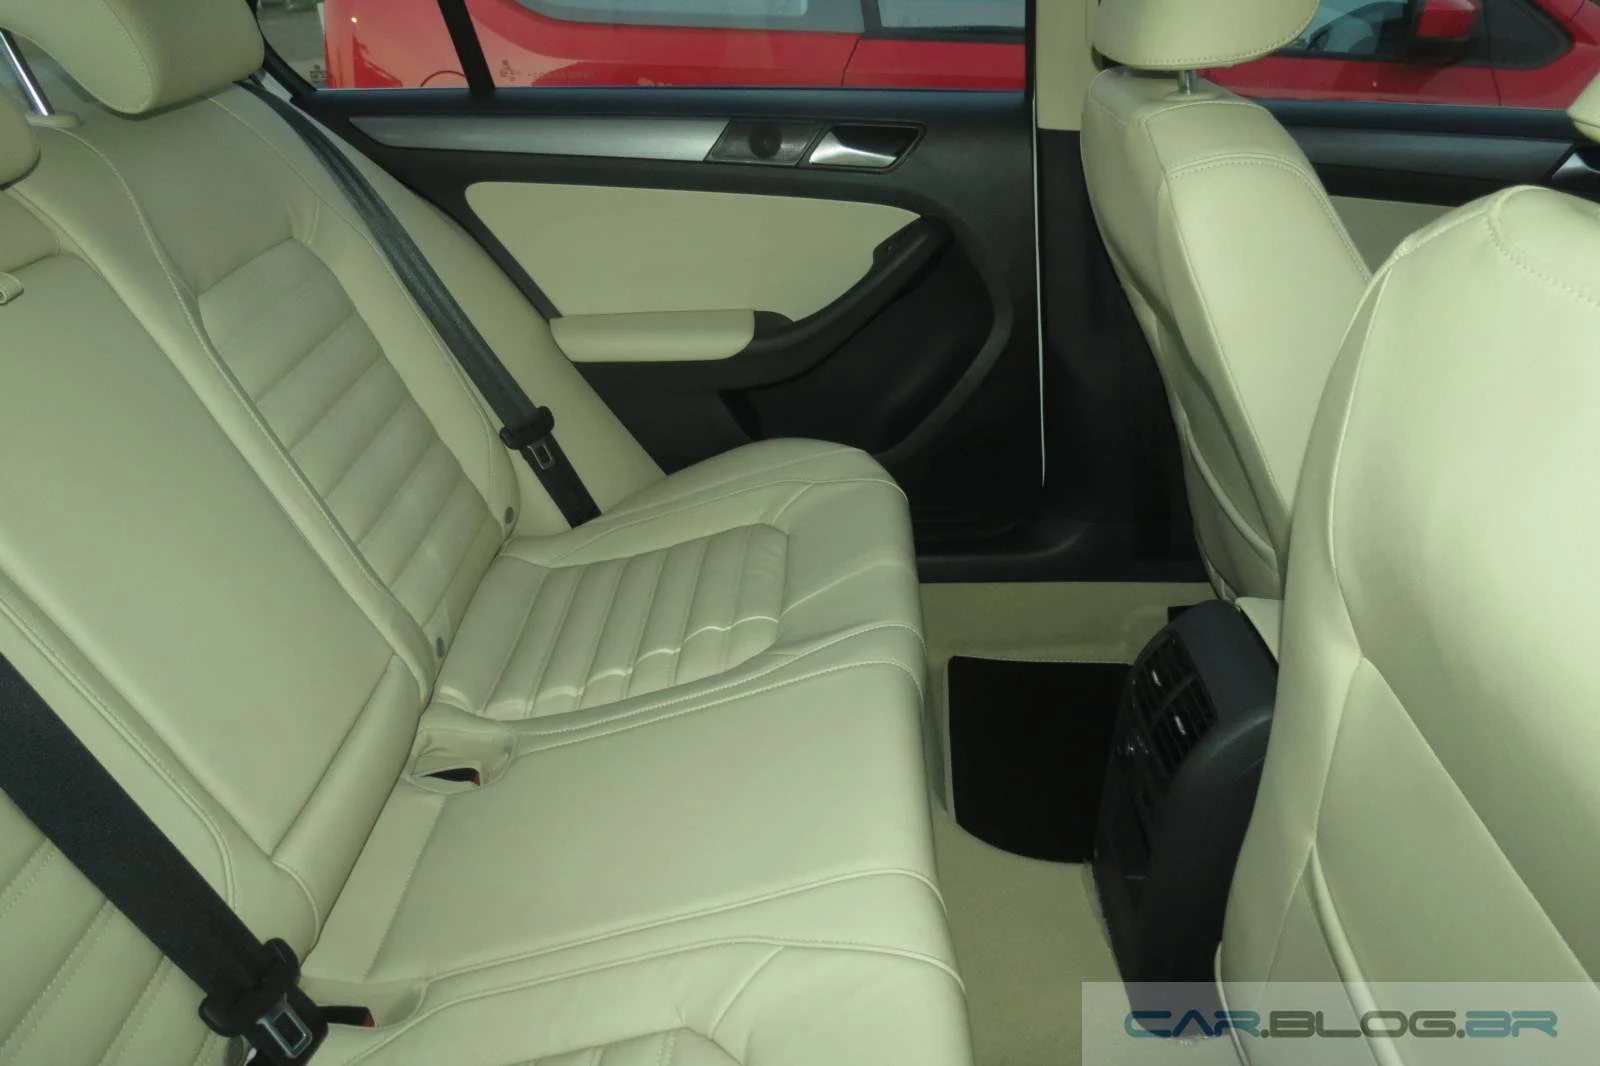 VW Jetta TSI 2014 - interior de couro bege